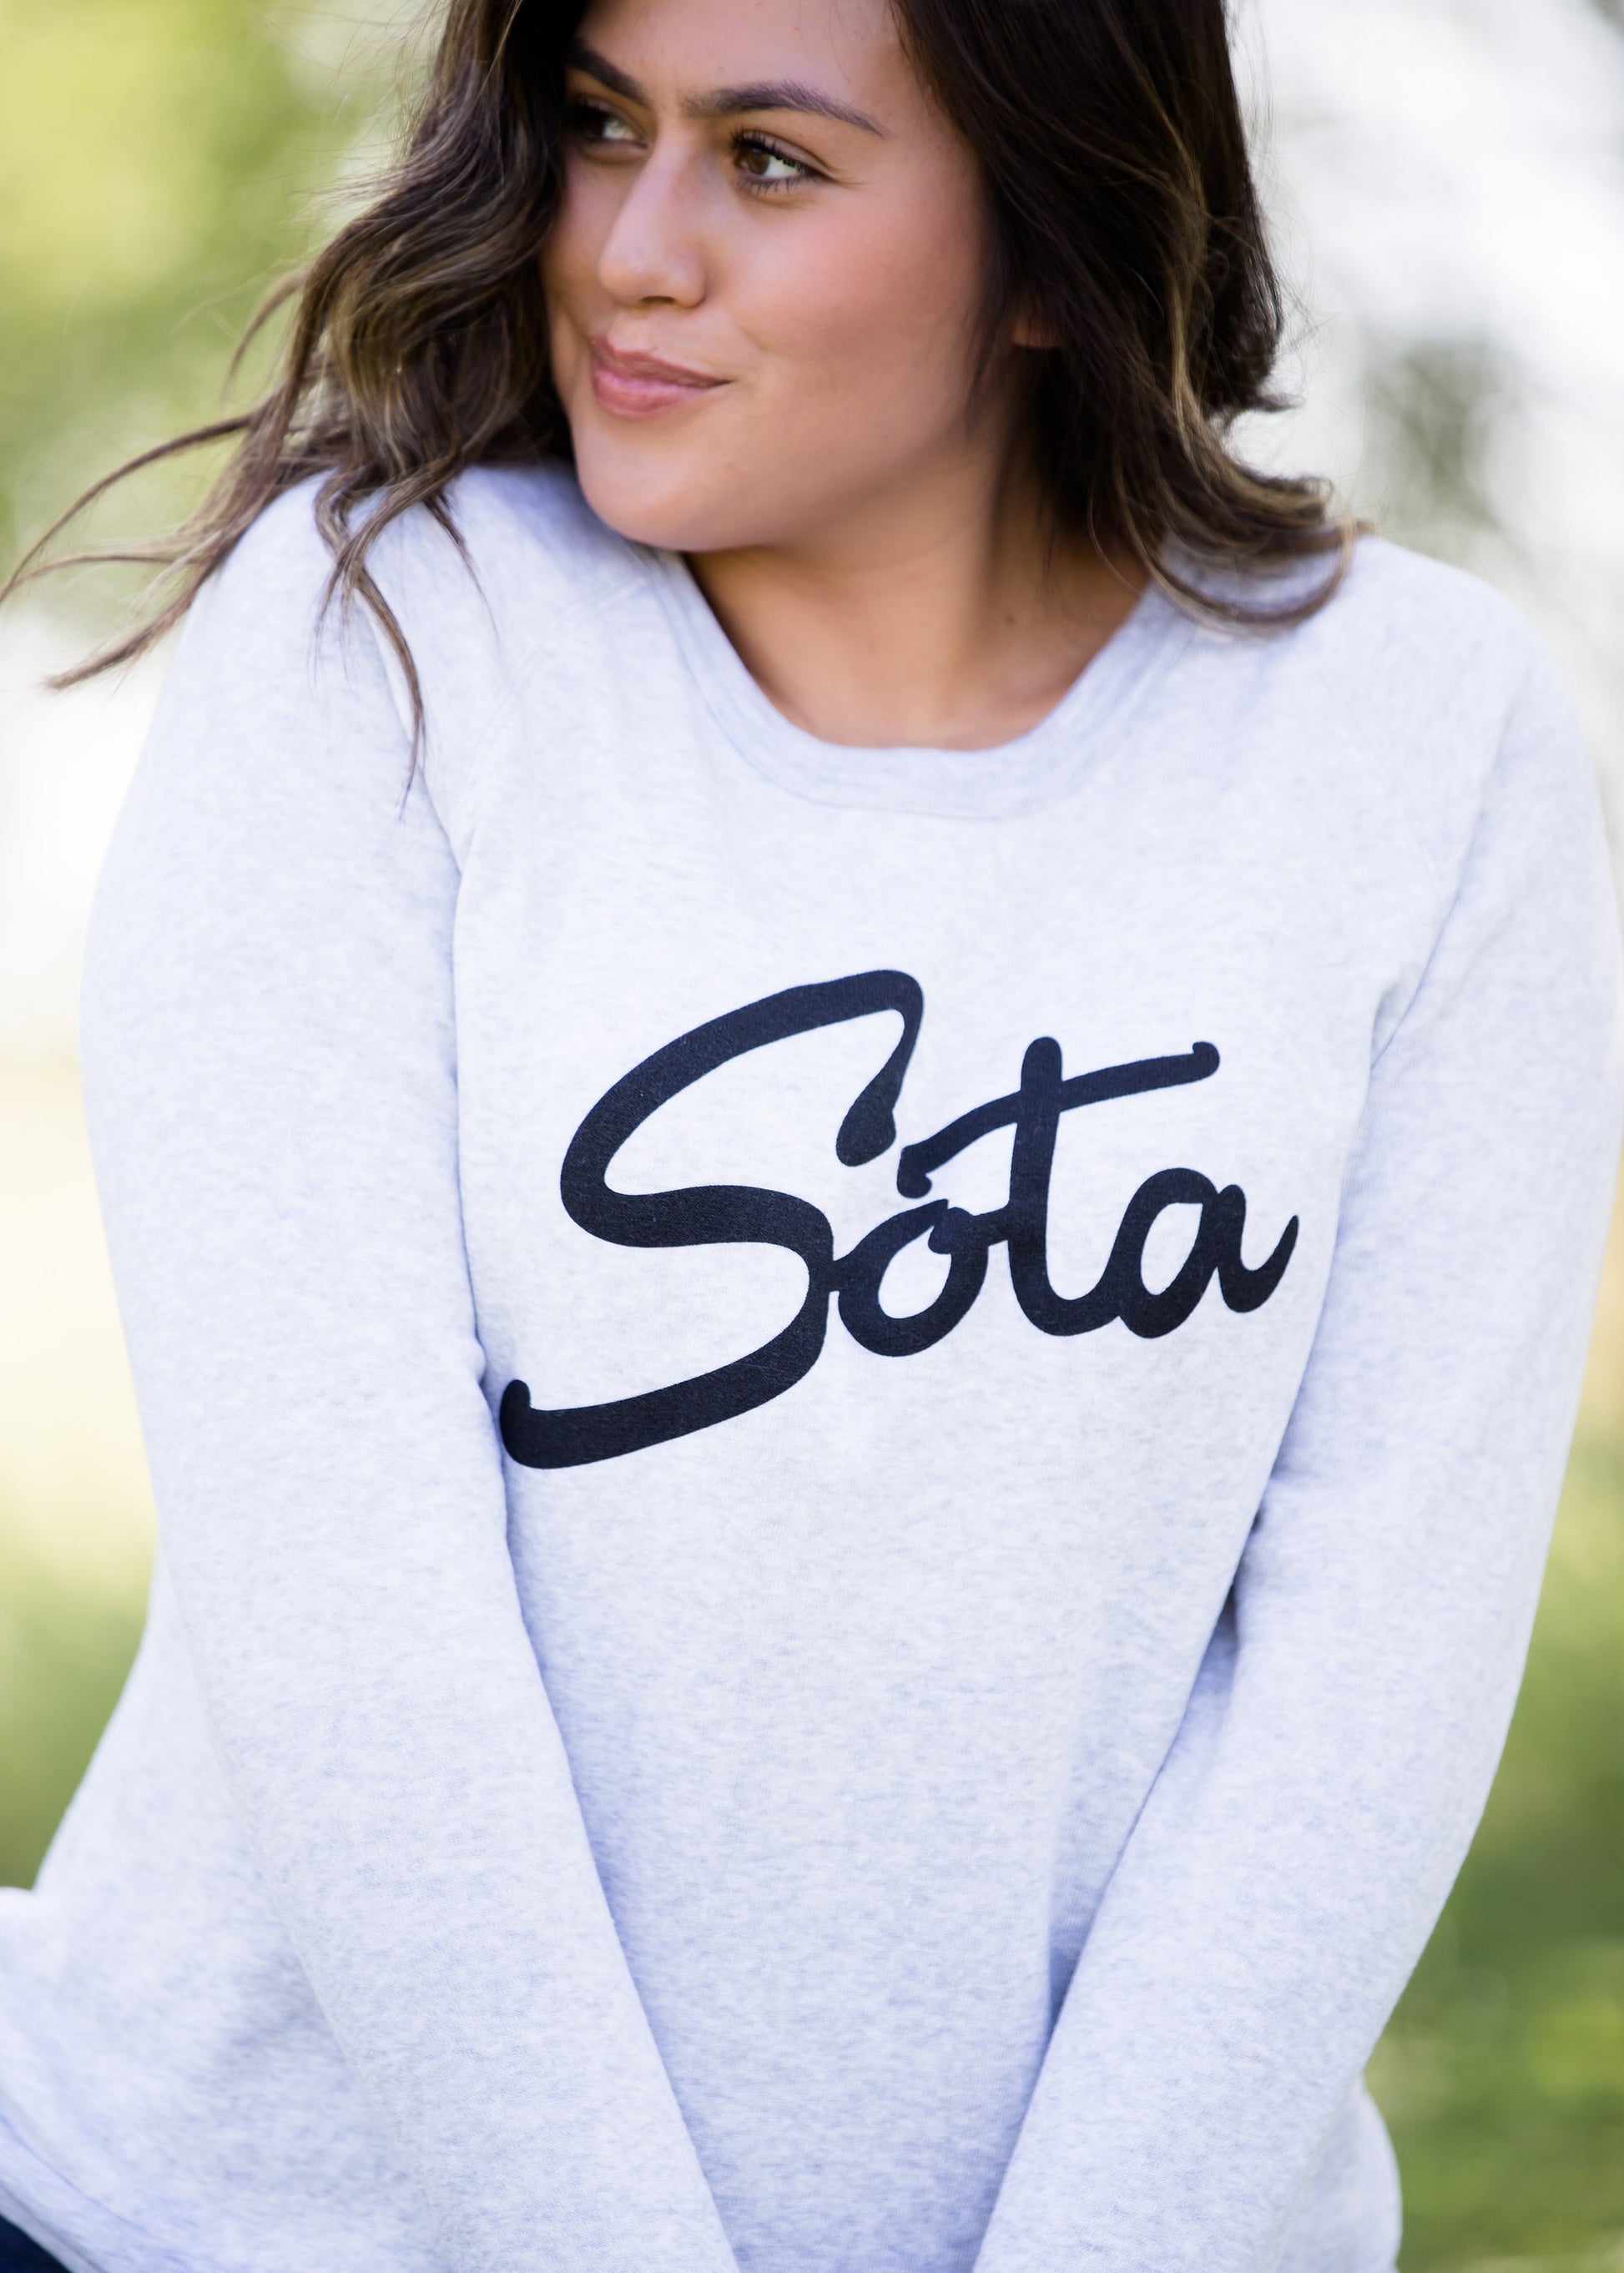 Sota' Steelton Crewneck Sweatshirt Tops